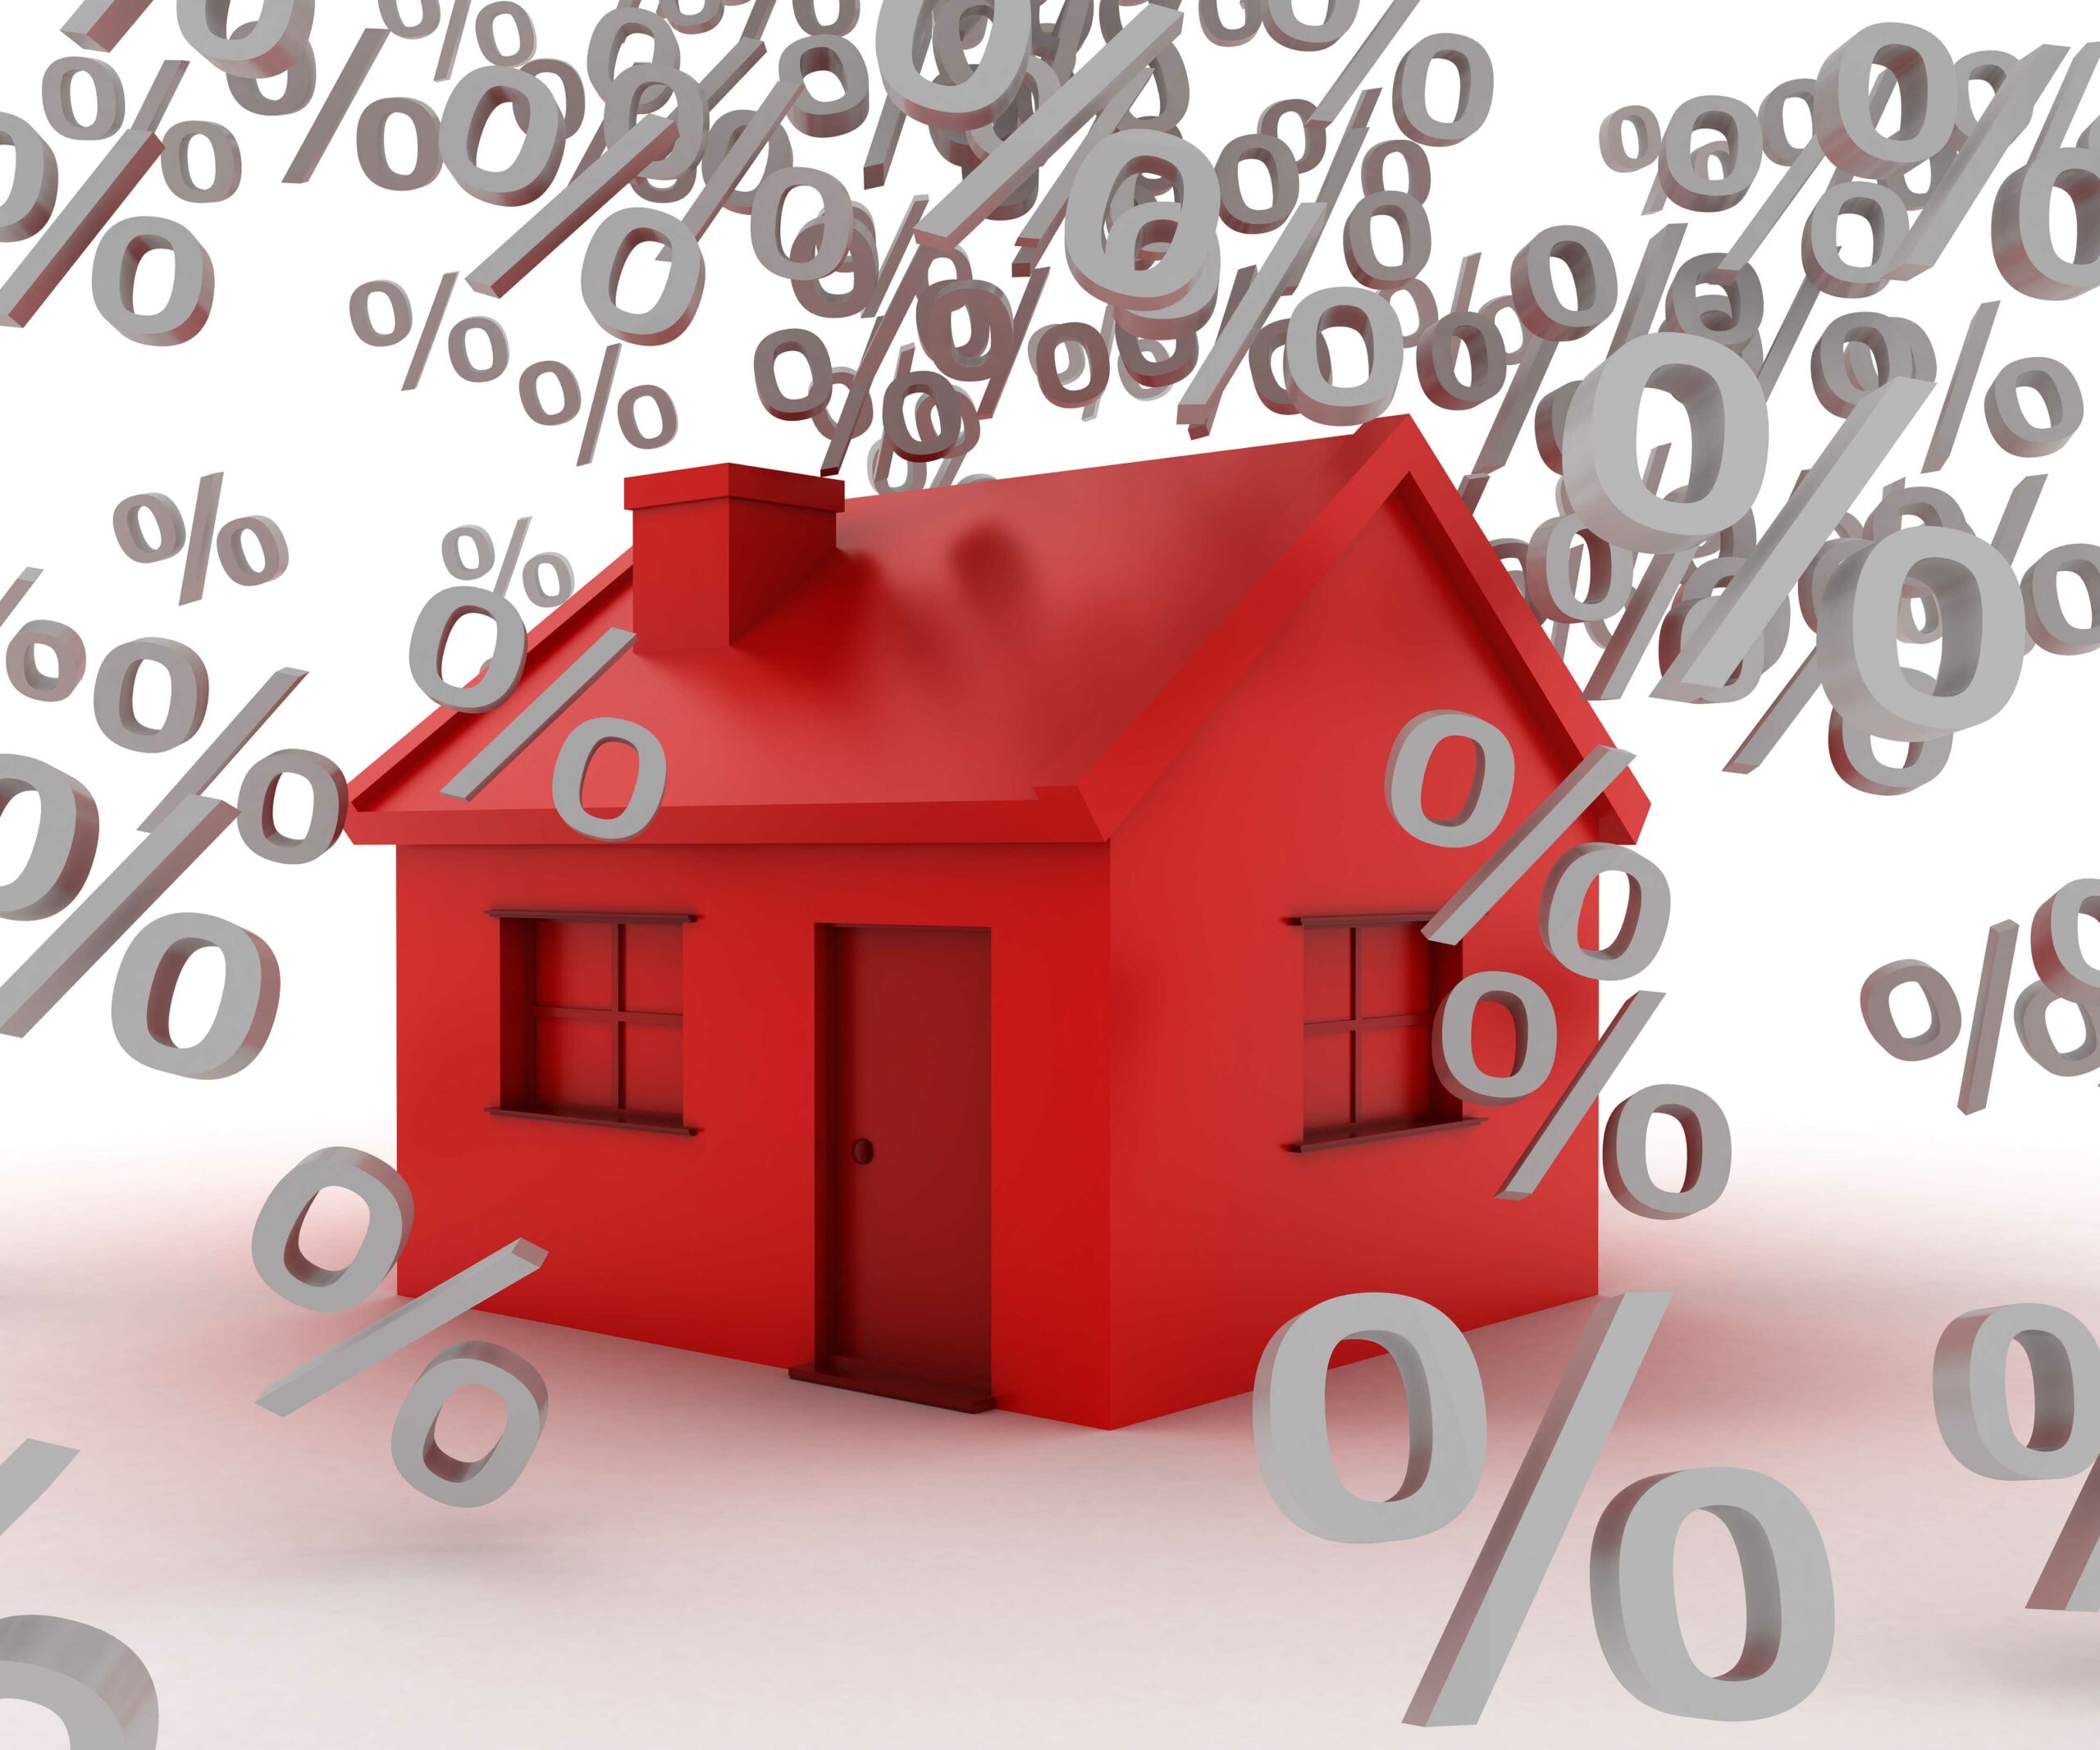 Насколько важно купить недвижимость по скидкам